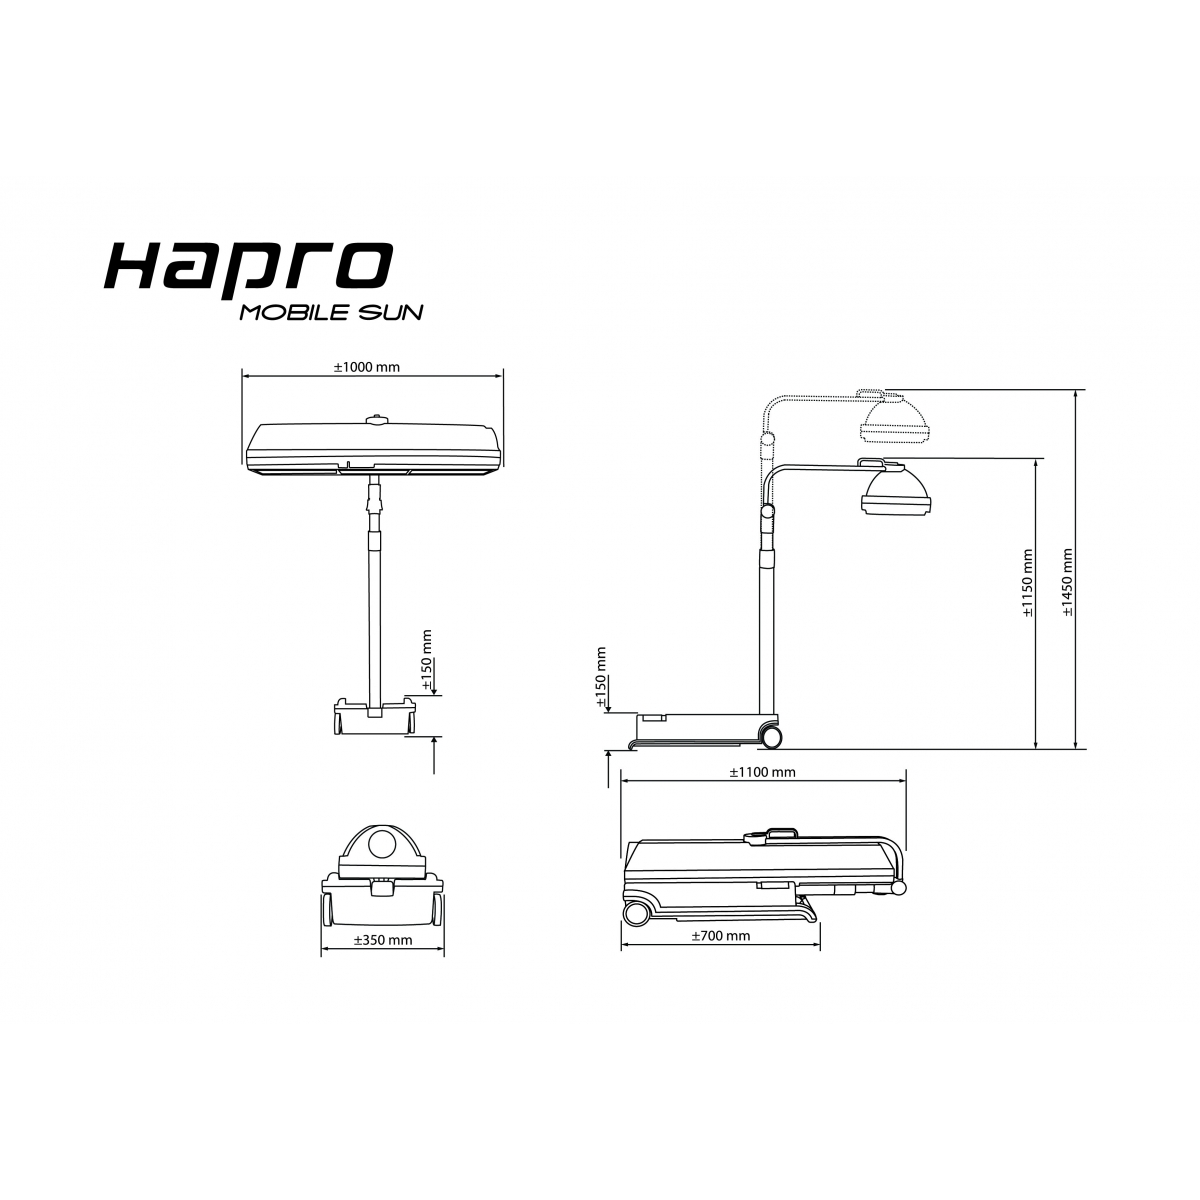 Hapro MobileSun HP 8540 Solarium compacto - Soláriums domésticos - Hapro